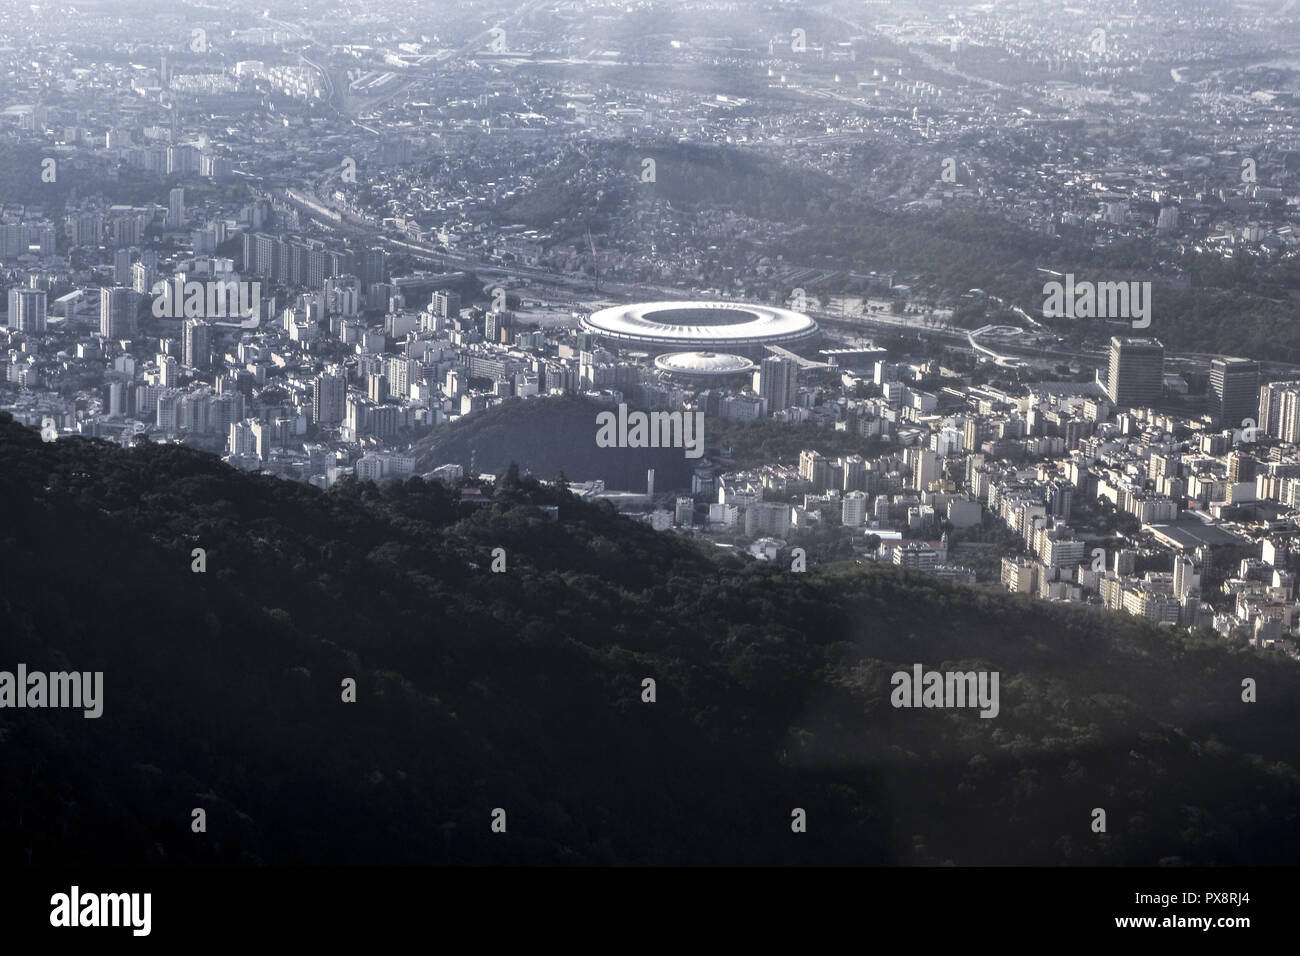 Rio de Janeiro, Zona Norte, Maracana stadion, FIFA 2014, Worldcup, Brazil Stock Photo